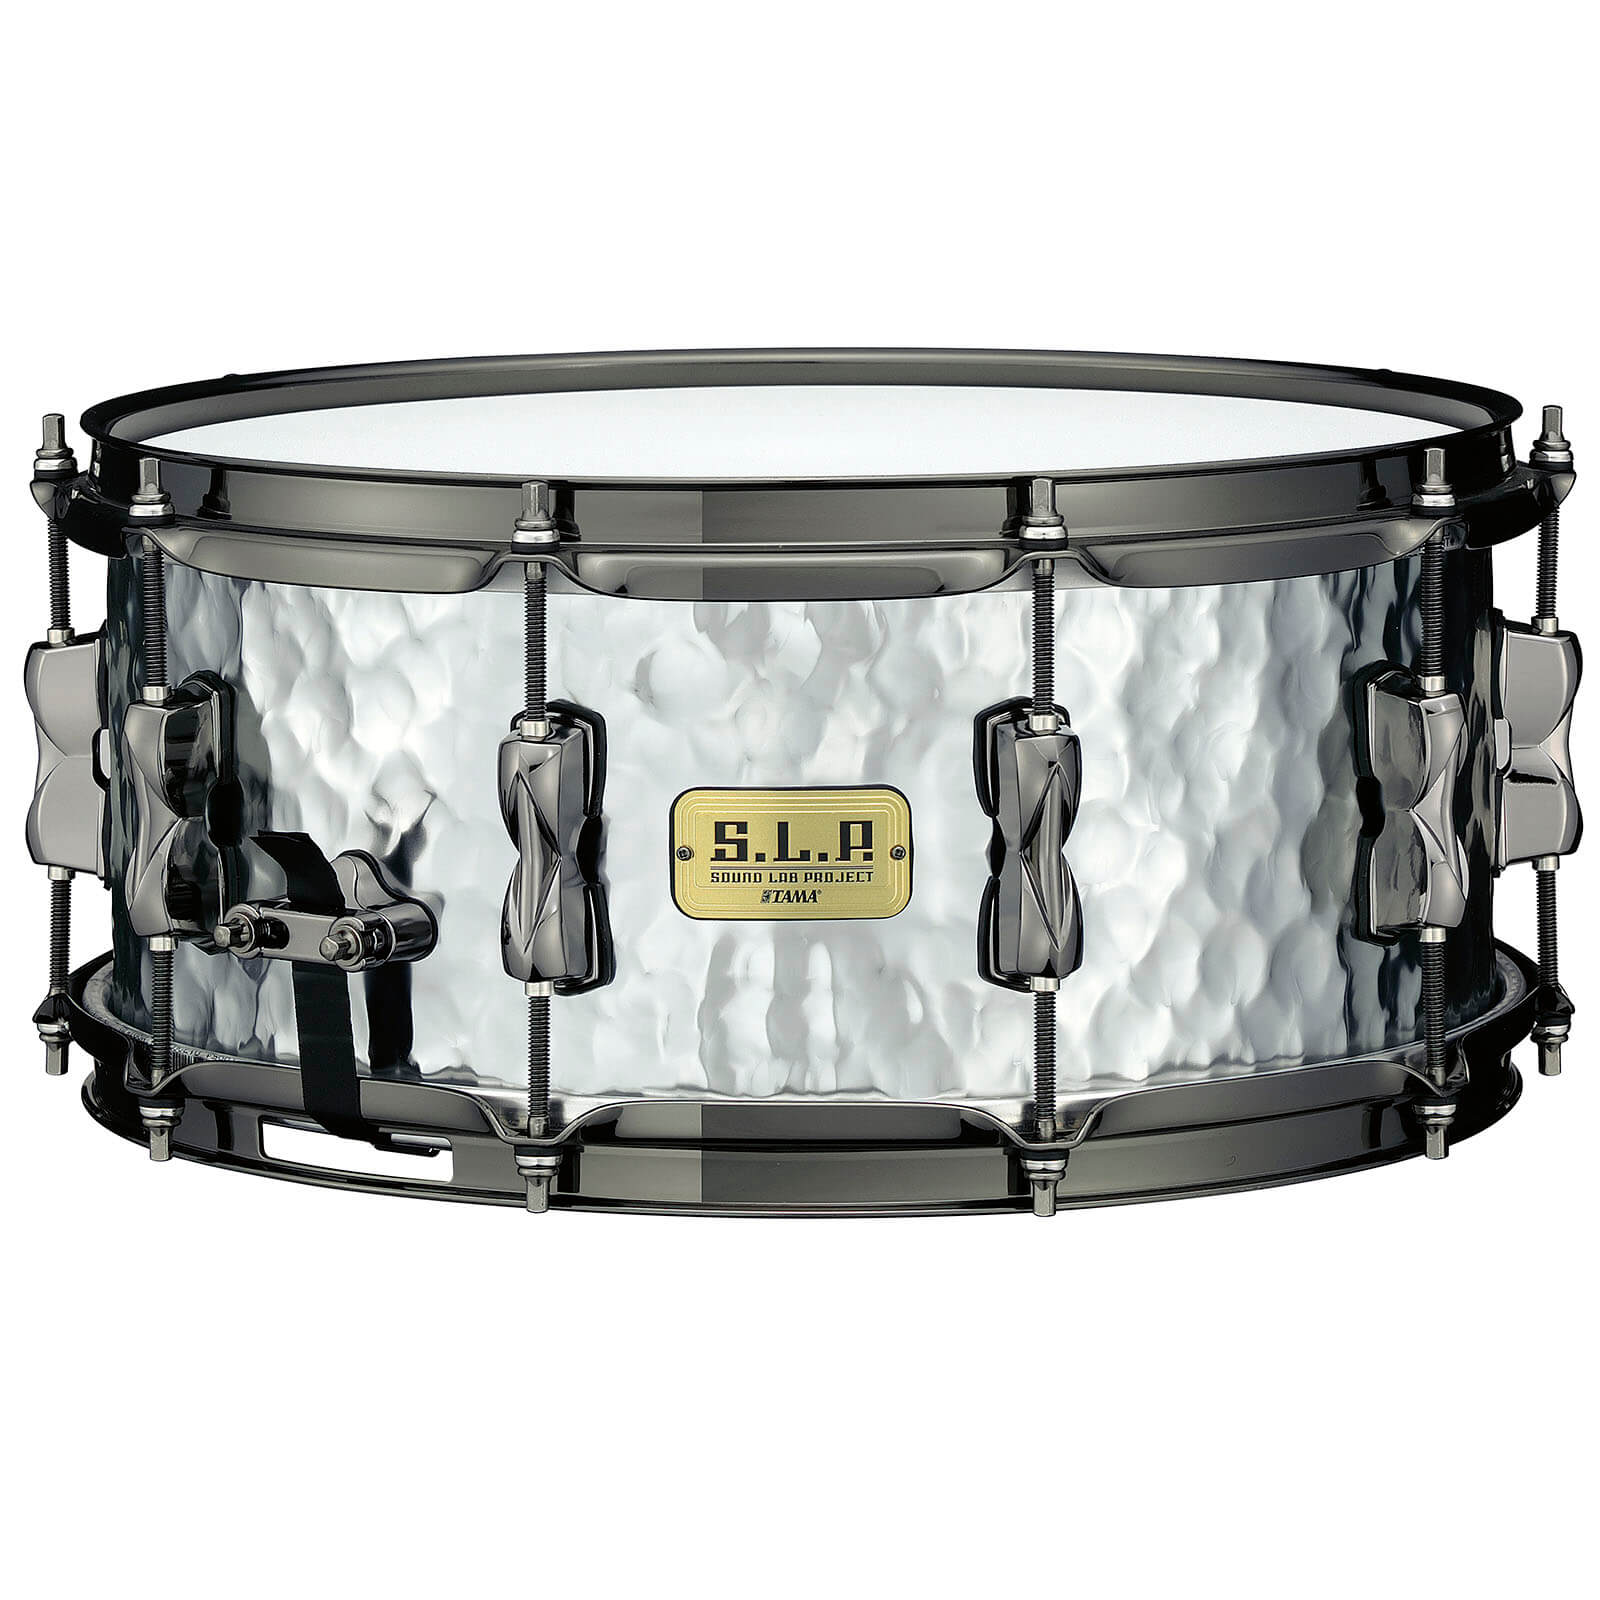 Tama SLP Expressive Hammered Steel Snare Drum 14x6 – Drum 